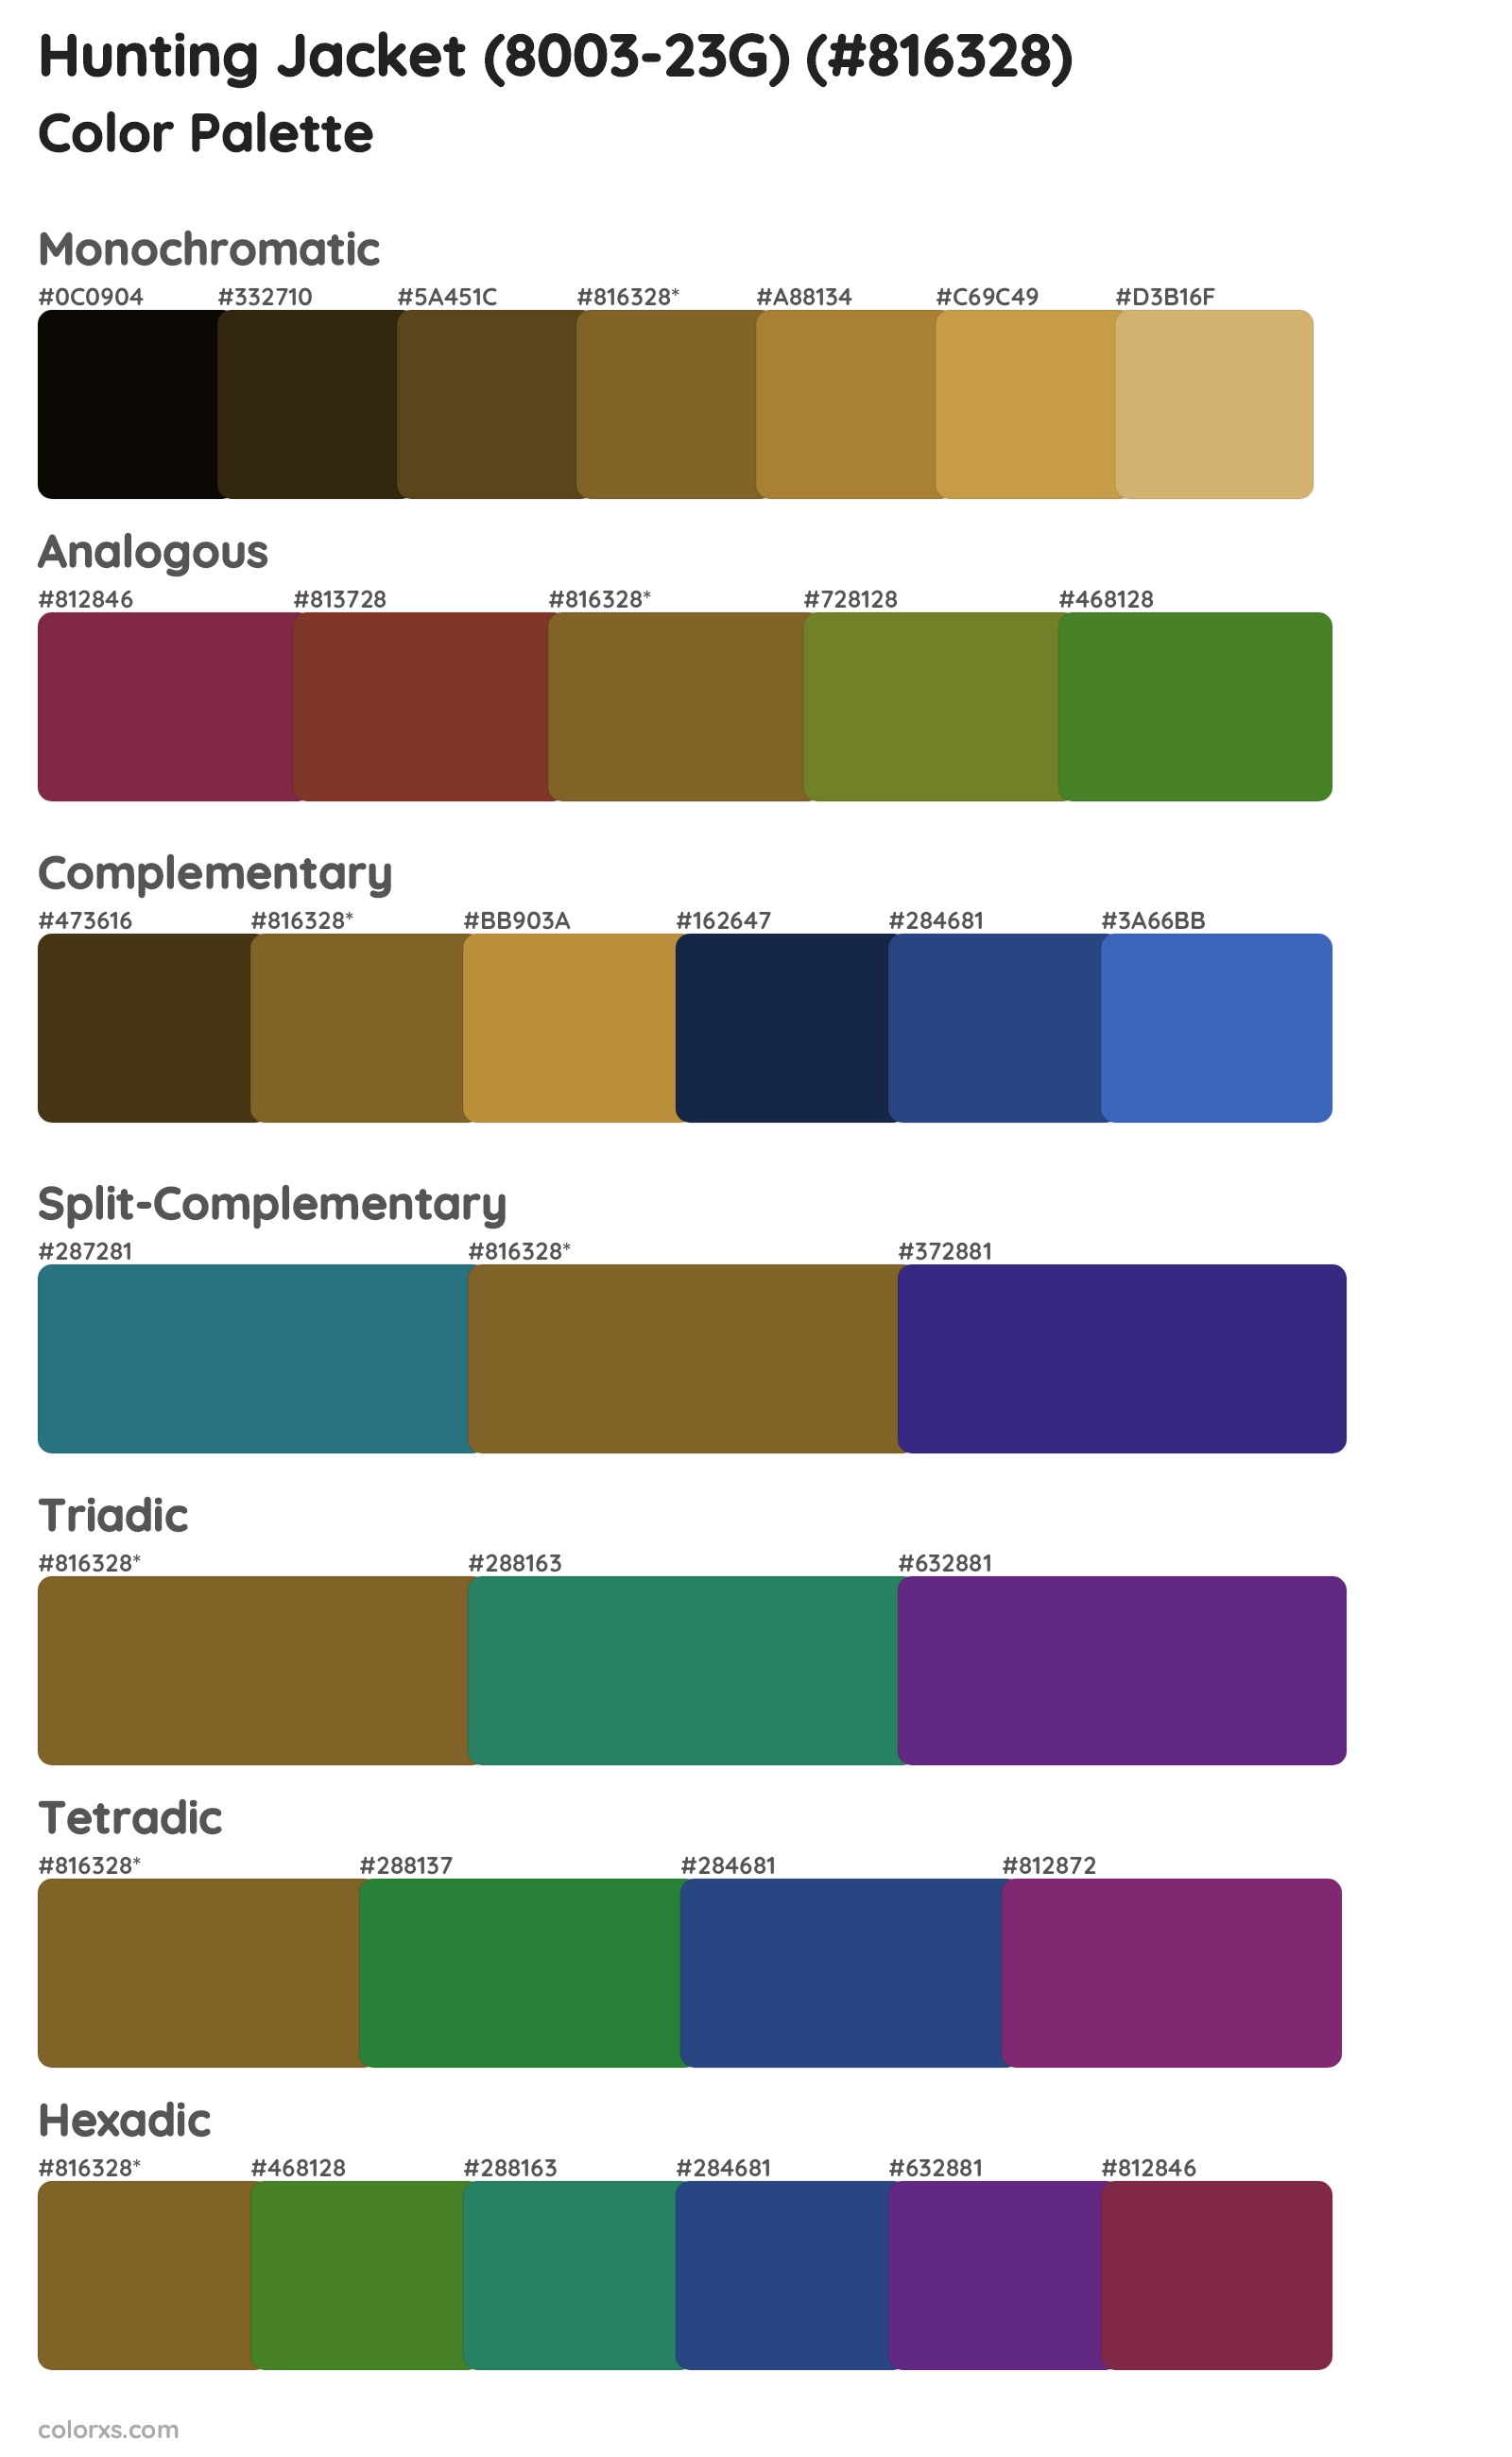 Hunting Jacket (8003-23G) Color Scheme Palettes